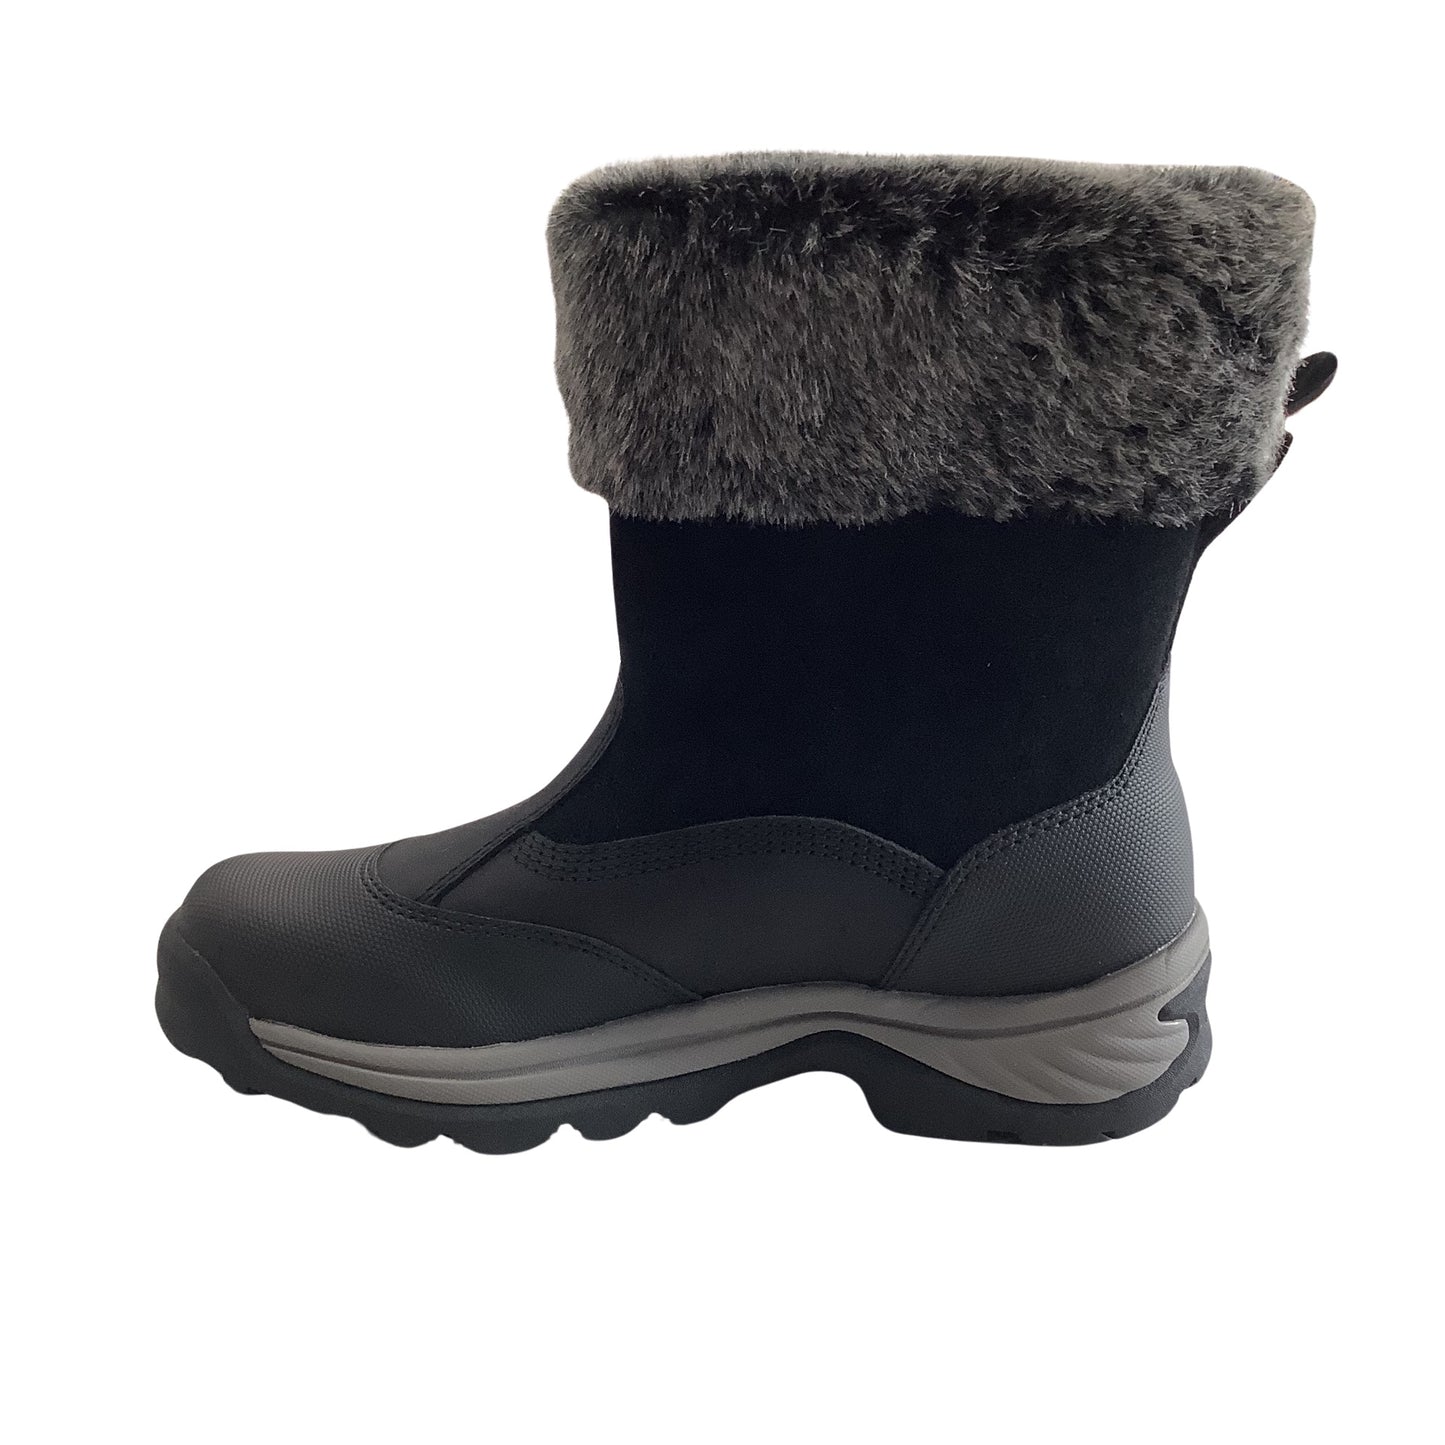 Timberland white edge wp insulated boot